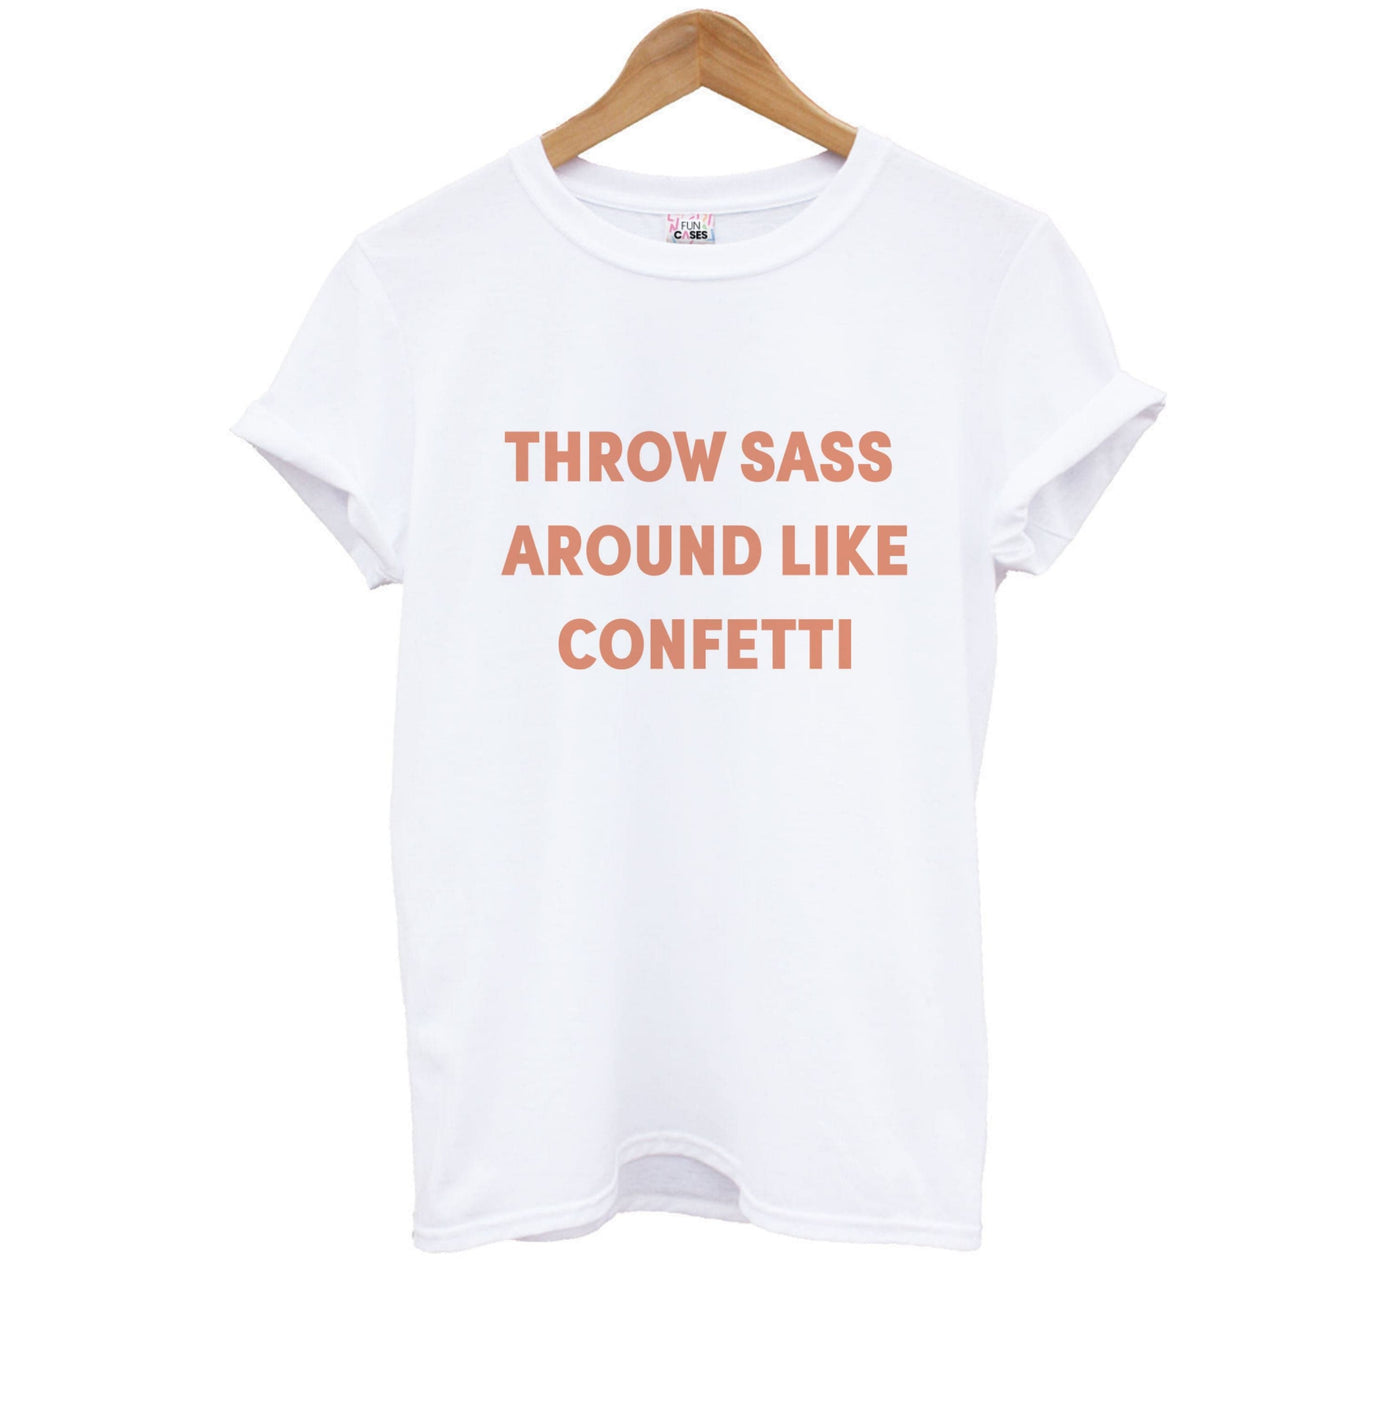 Throw Sass Around Like Confetti Kids T-Shirt